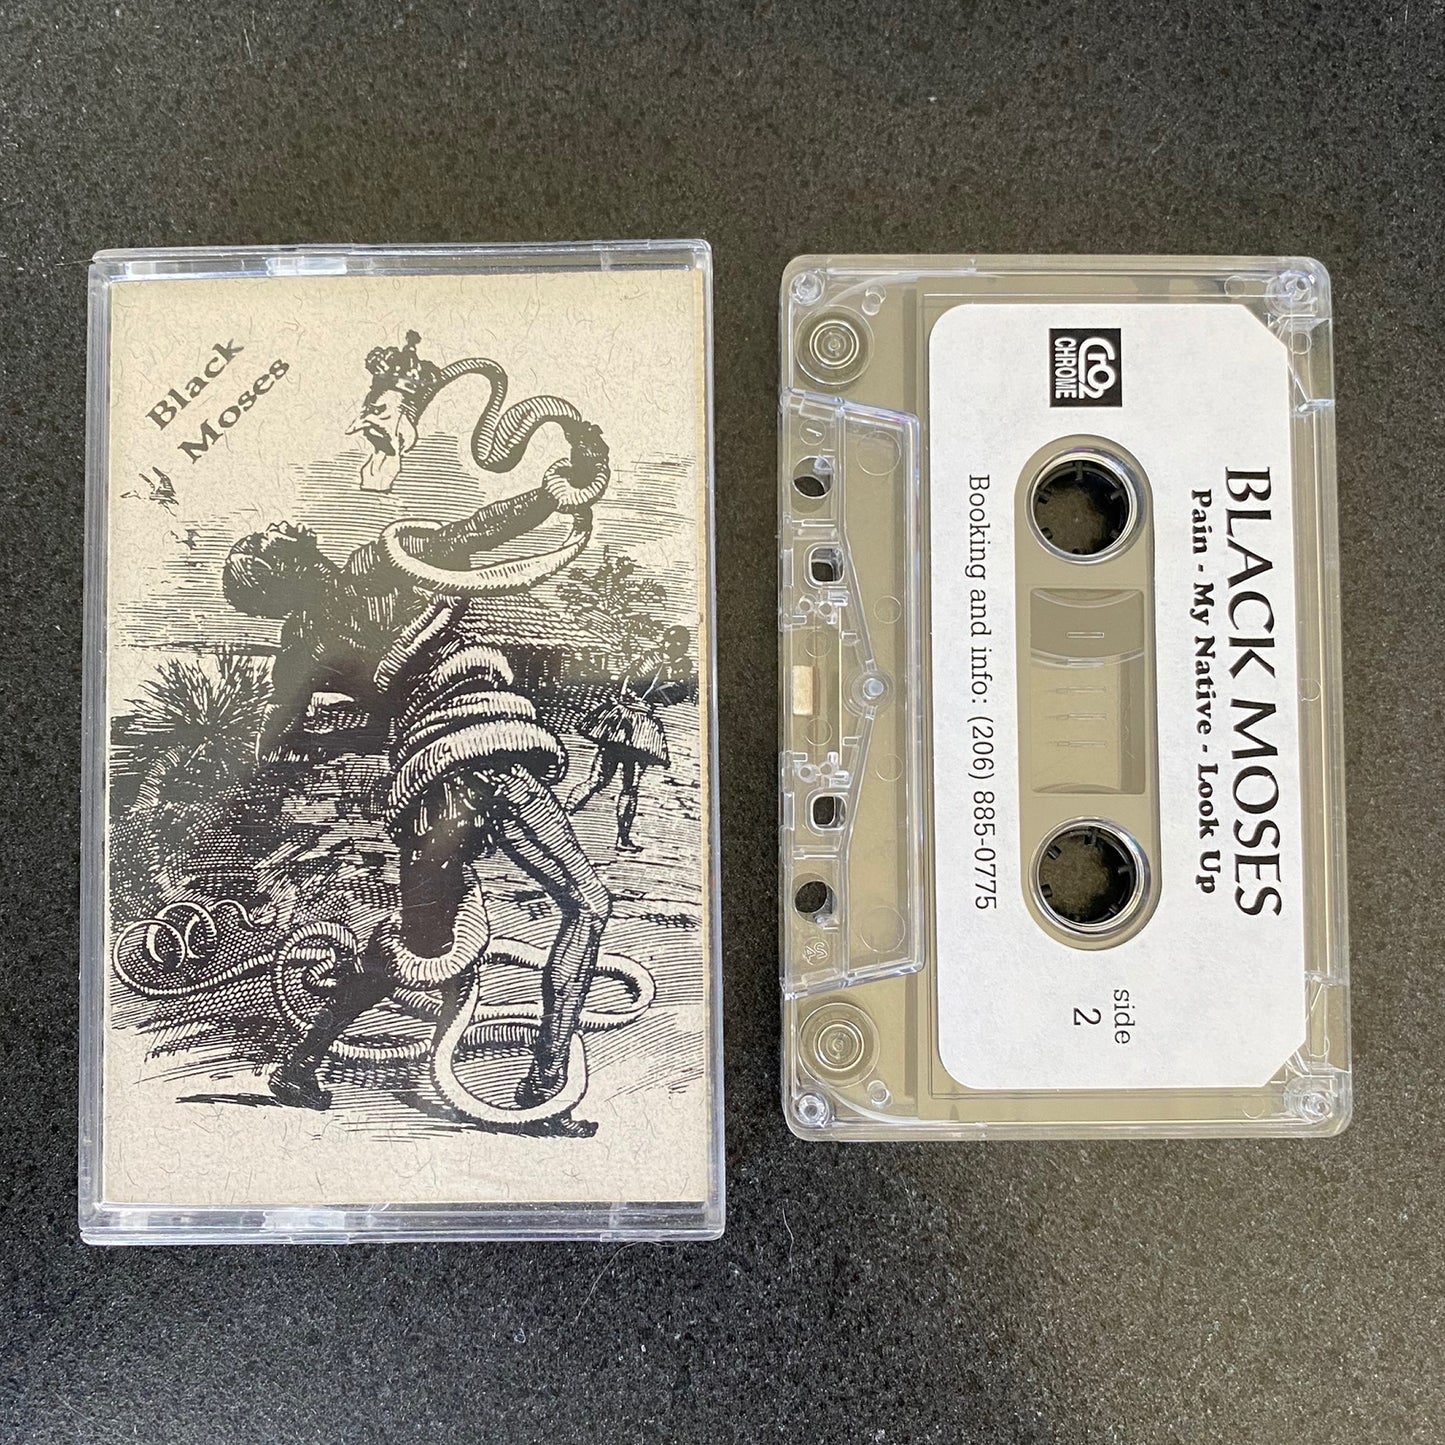 Black Moses - Original 1993 Cassette Demo